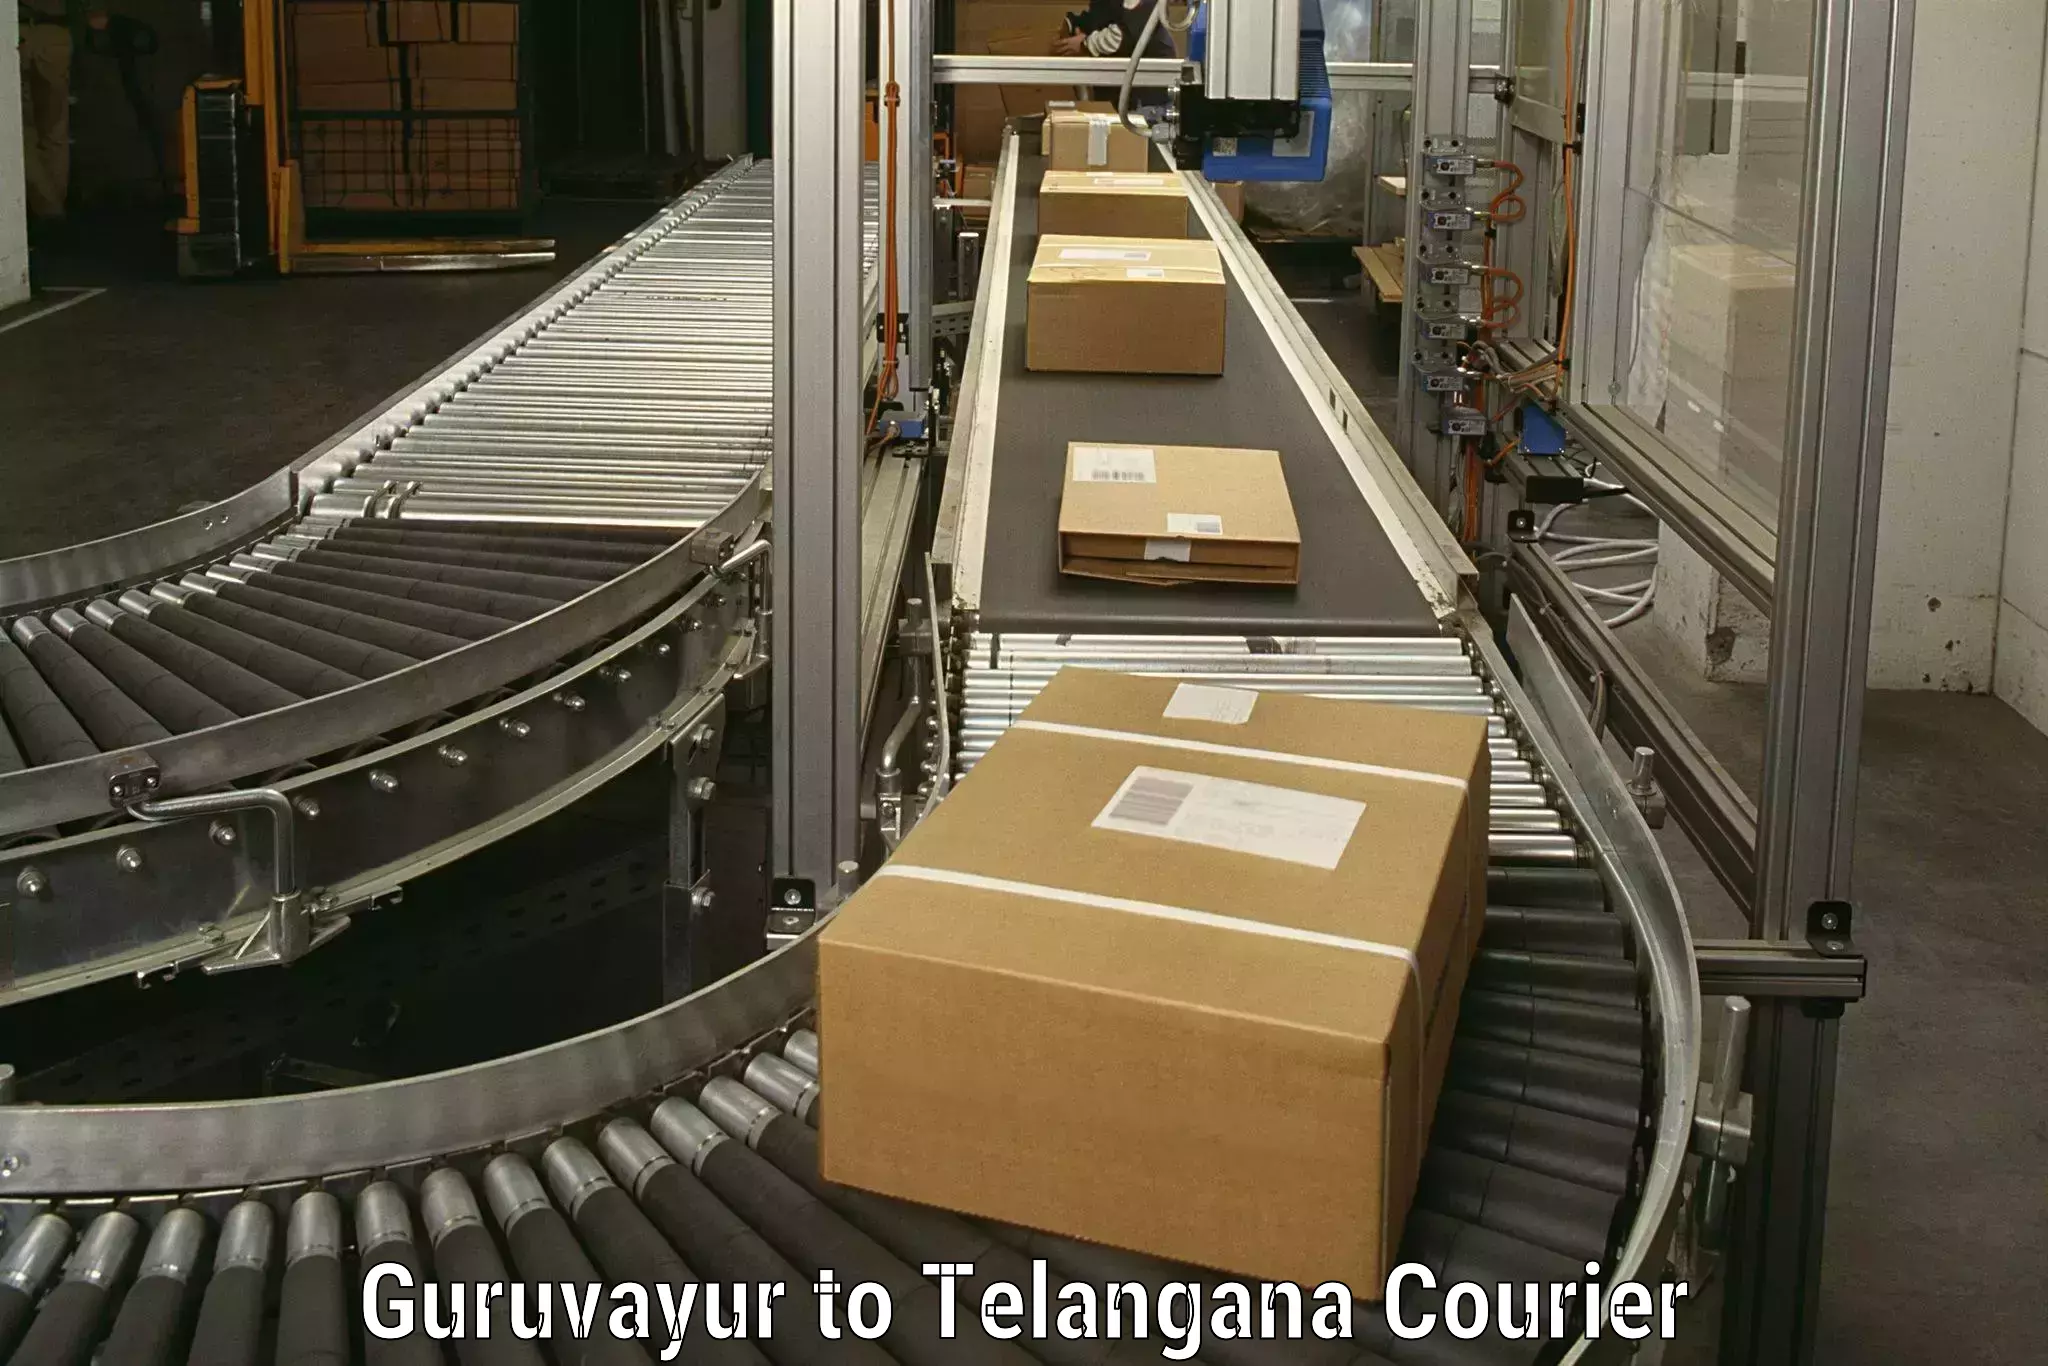 Furniture moving experts Guruvayur to Makthal